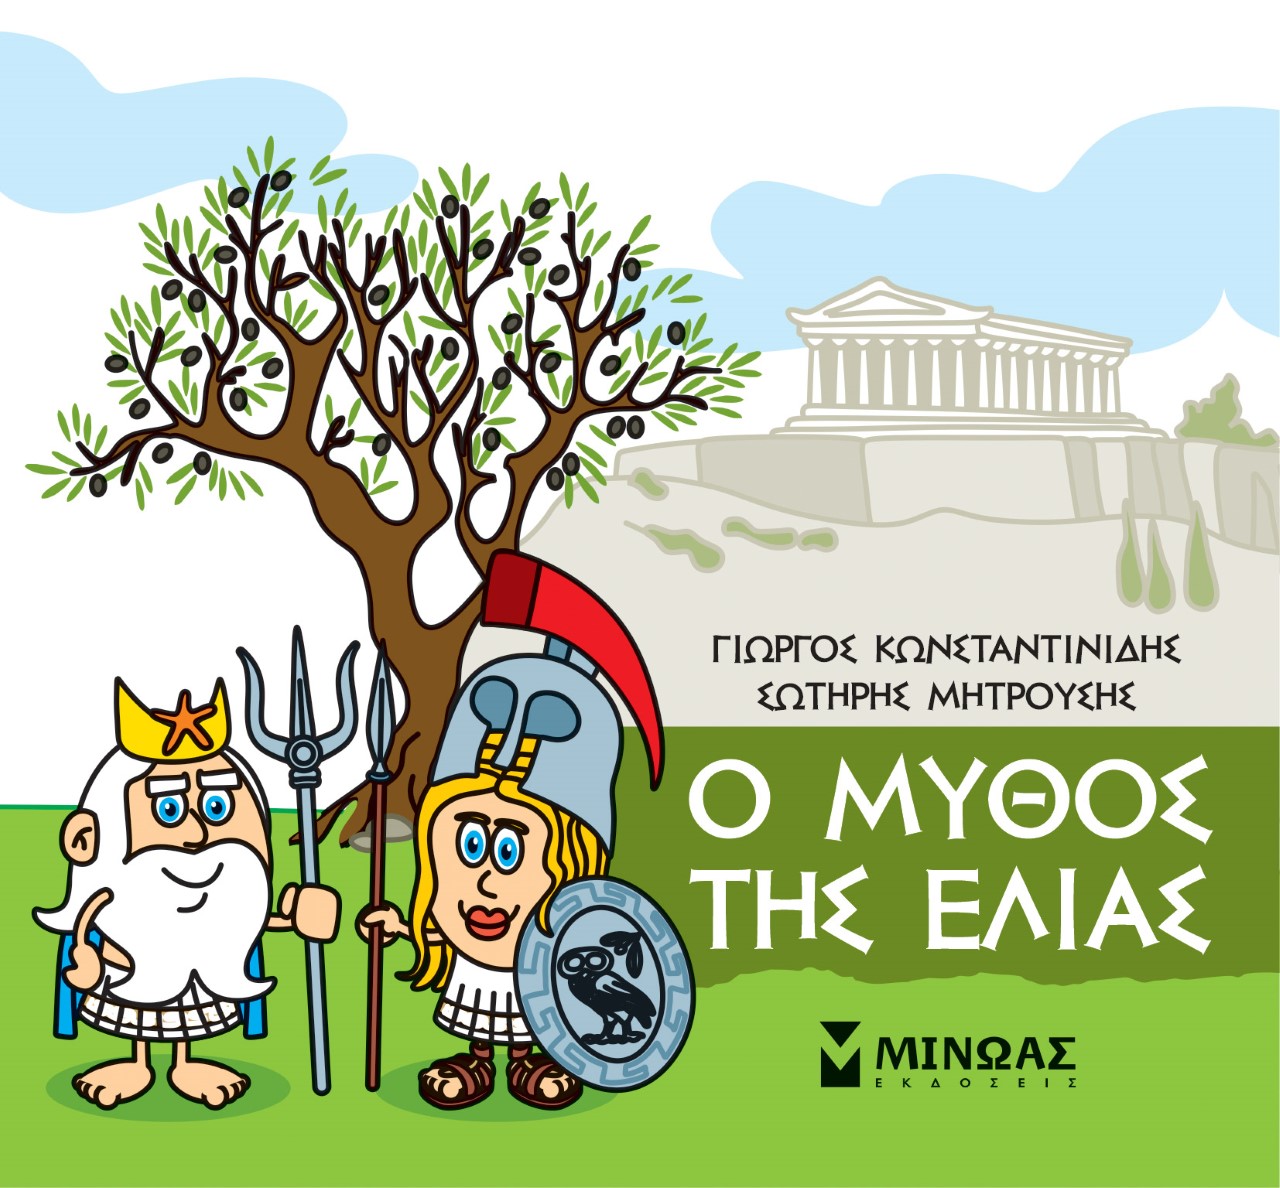 2021, Σωτήρης  Μητρούσης (), Μικρή μυθολογία: Ο μύθος της ελιάς, , Κωνσταντινίδης, Γιώργος, Μίνωας